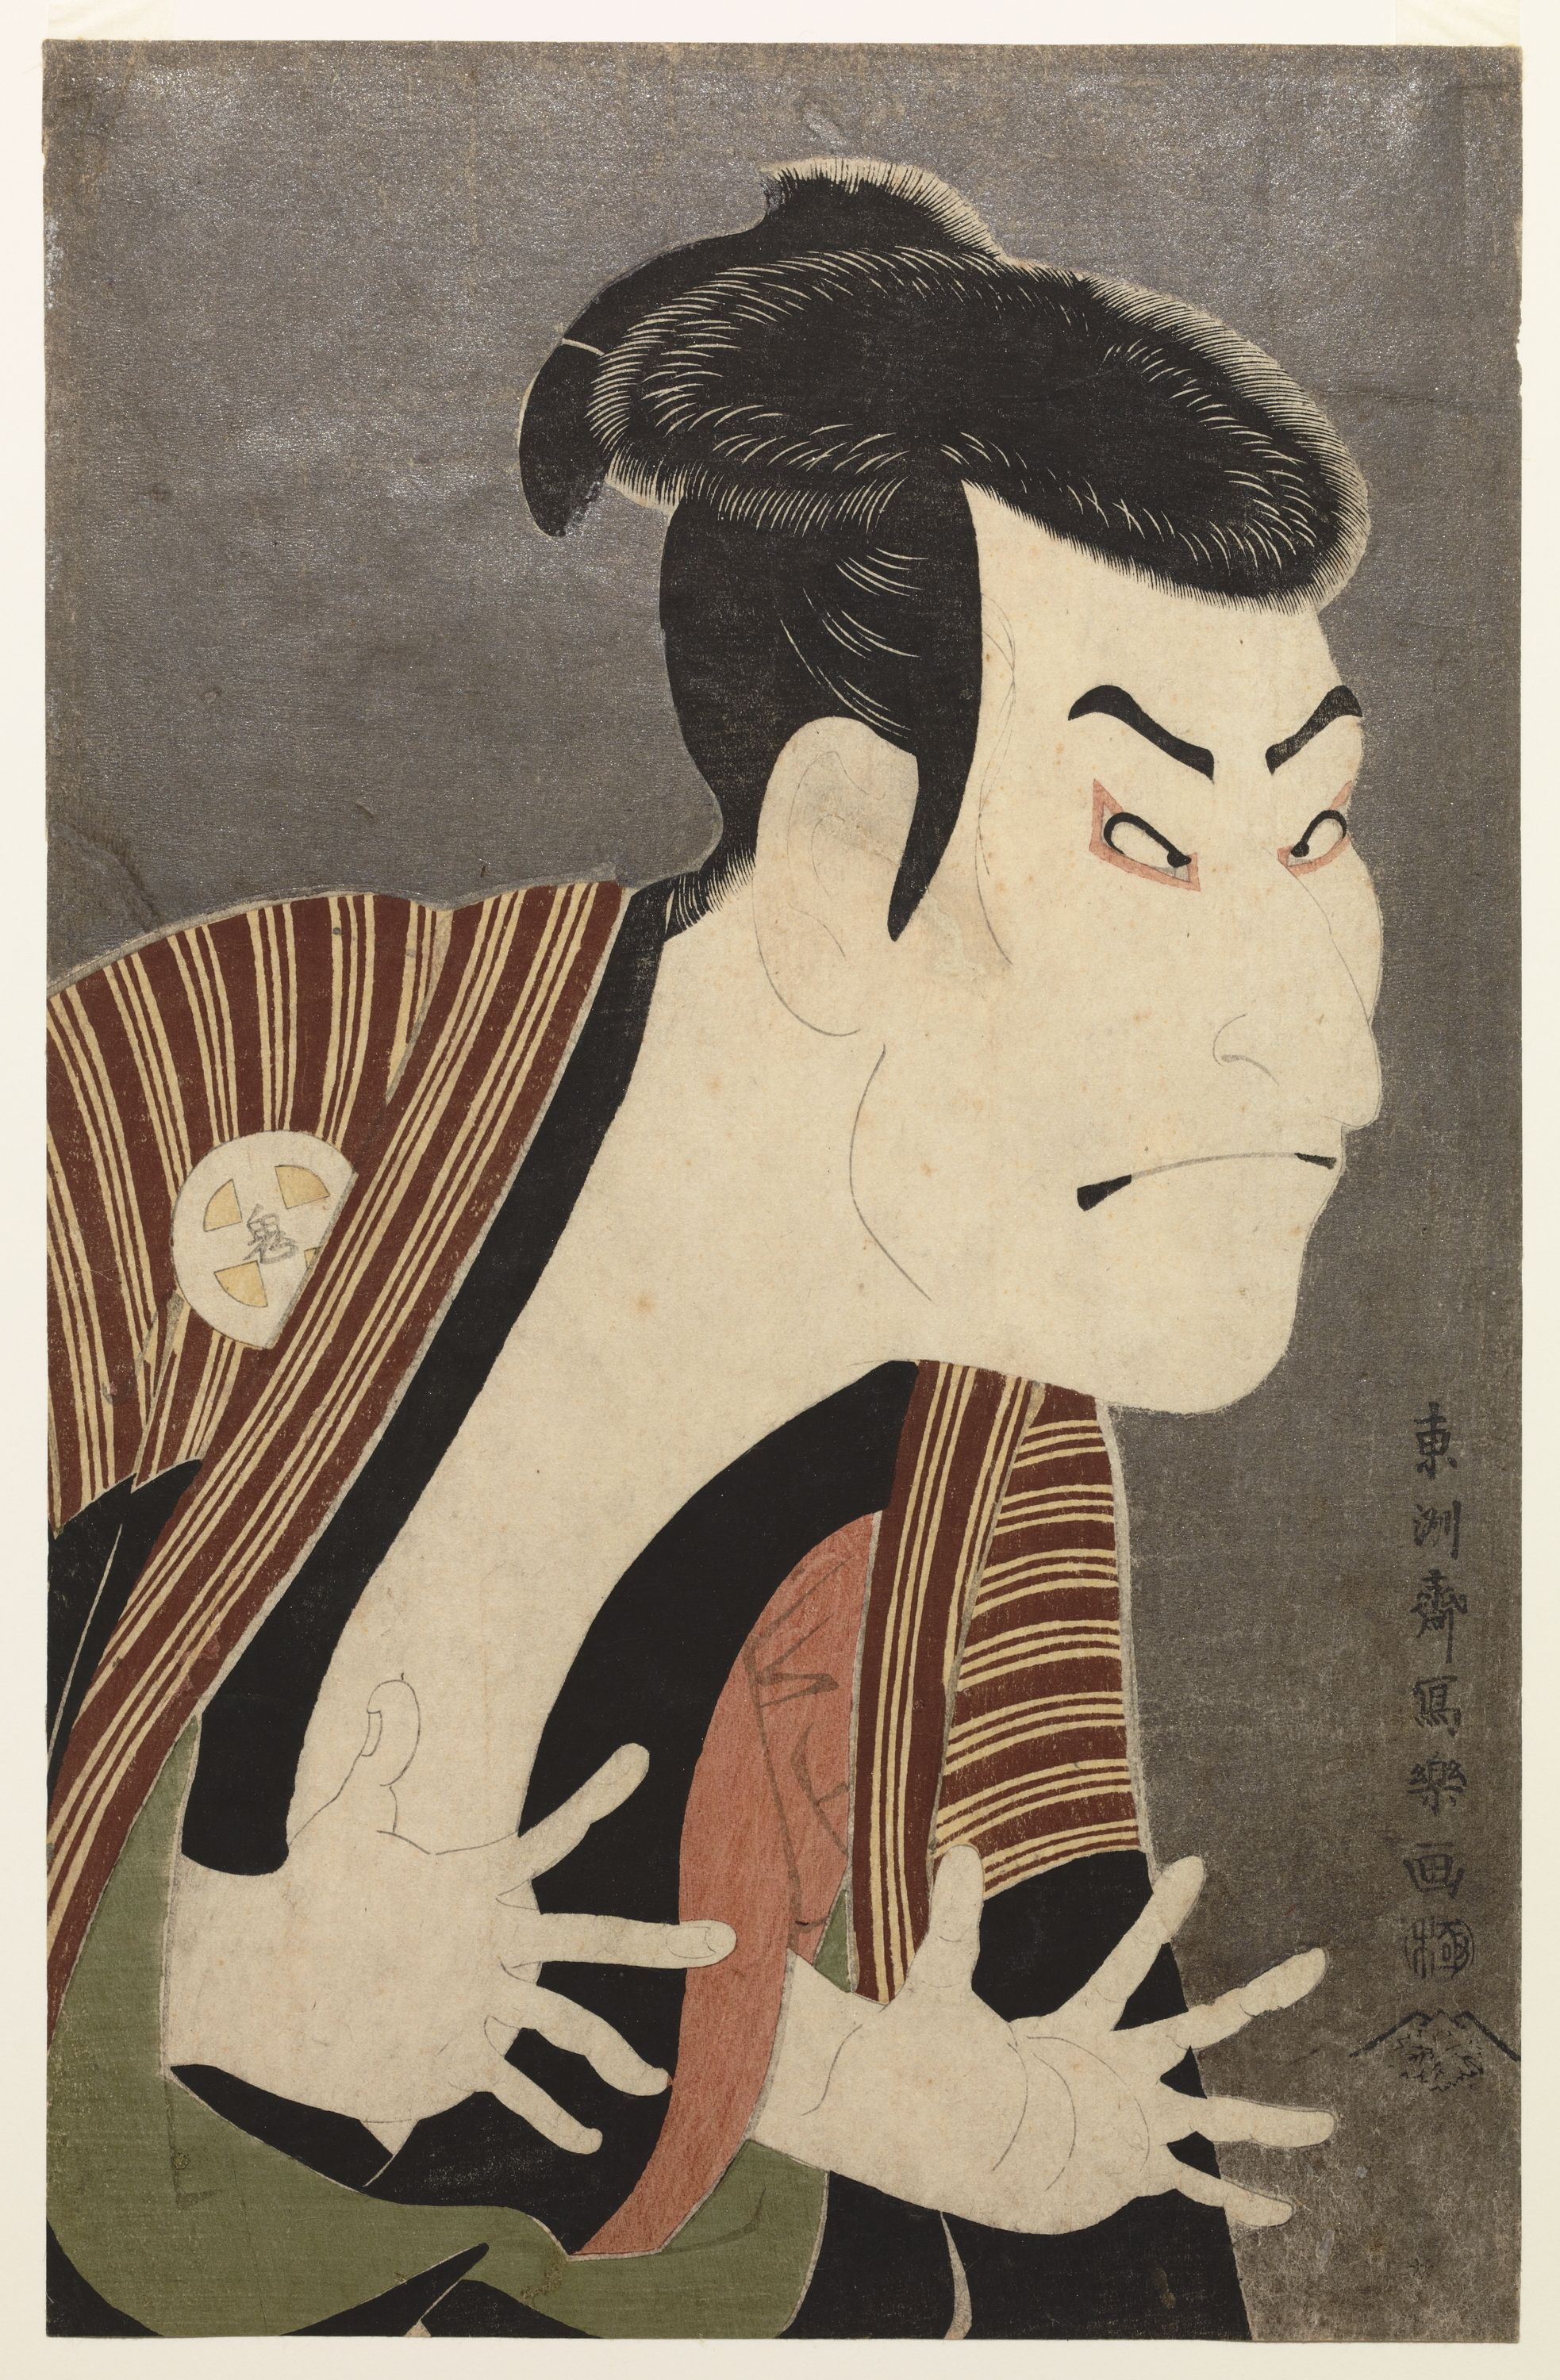 歌舞伎の浮世絵としてもっとも有名な1枚、東洲斎写楽の「三代目大谷鬼次の江戸兵衛」も蔦屋重三郎のプロデュースによるものだった（出典：ColBase）